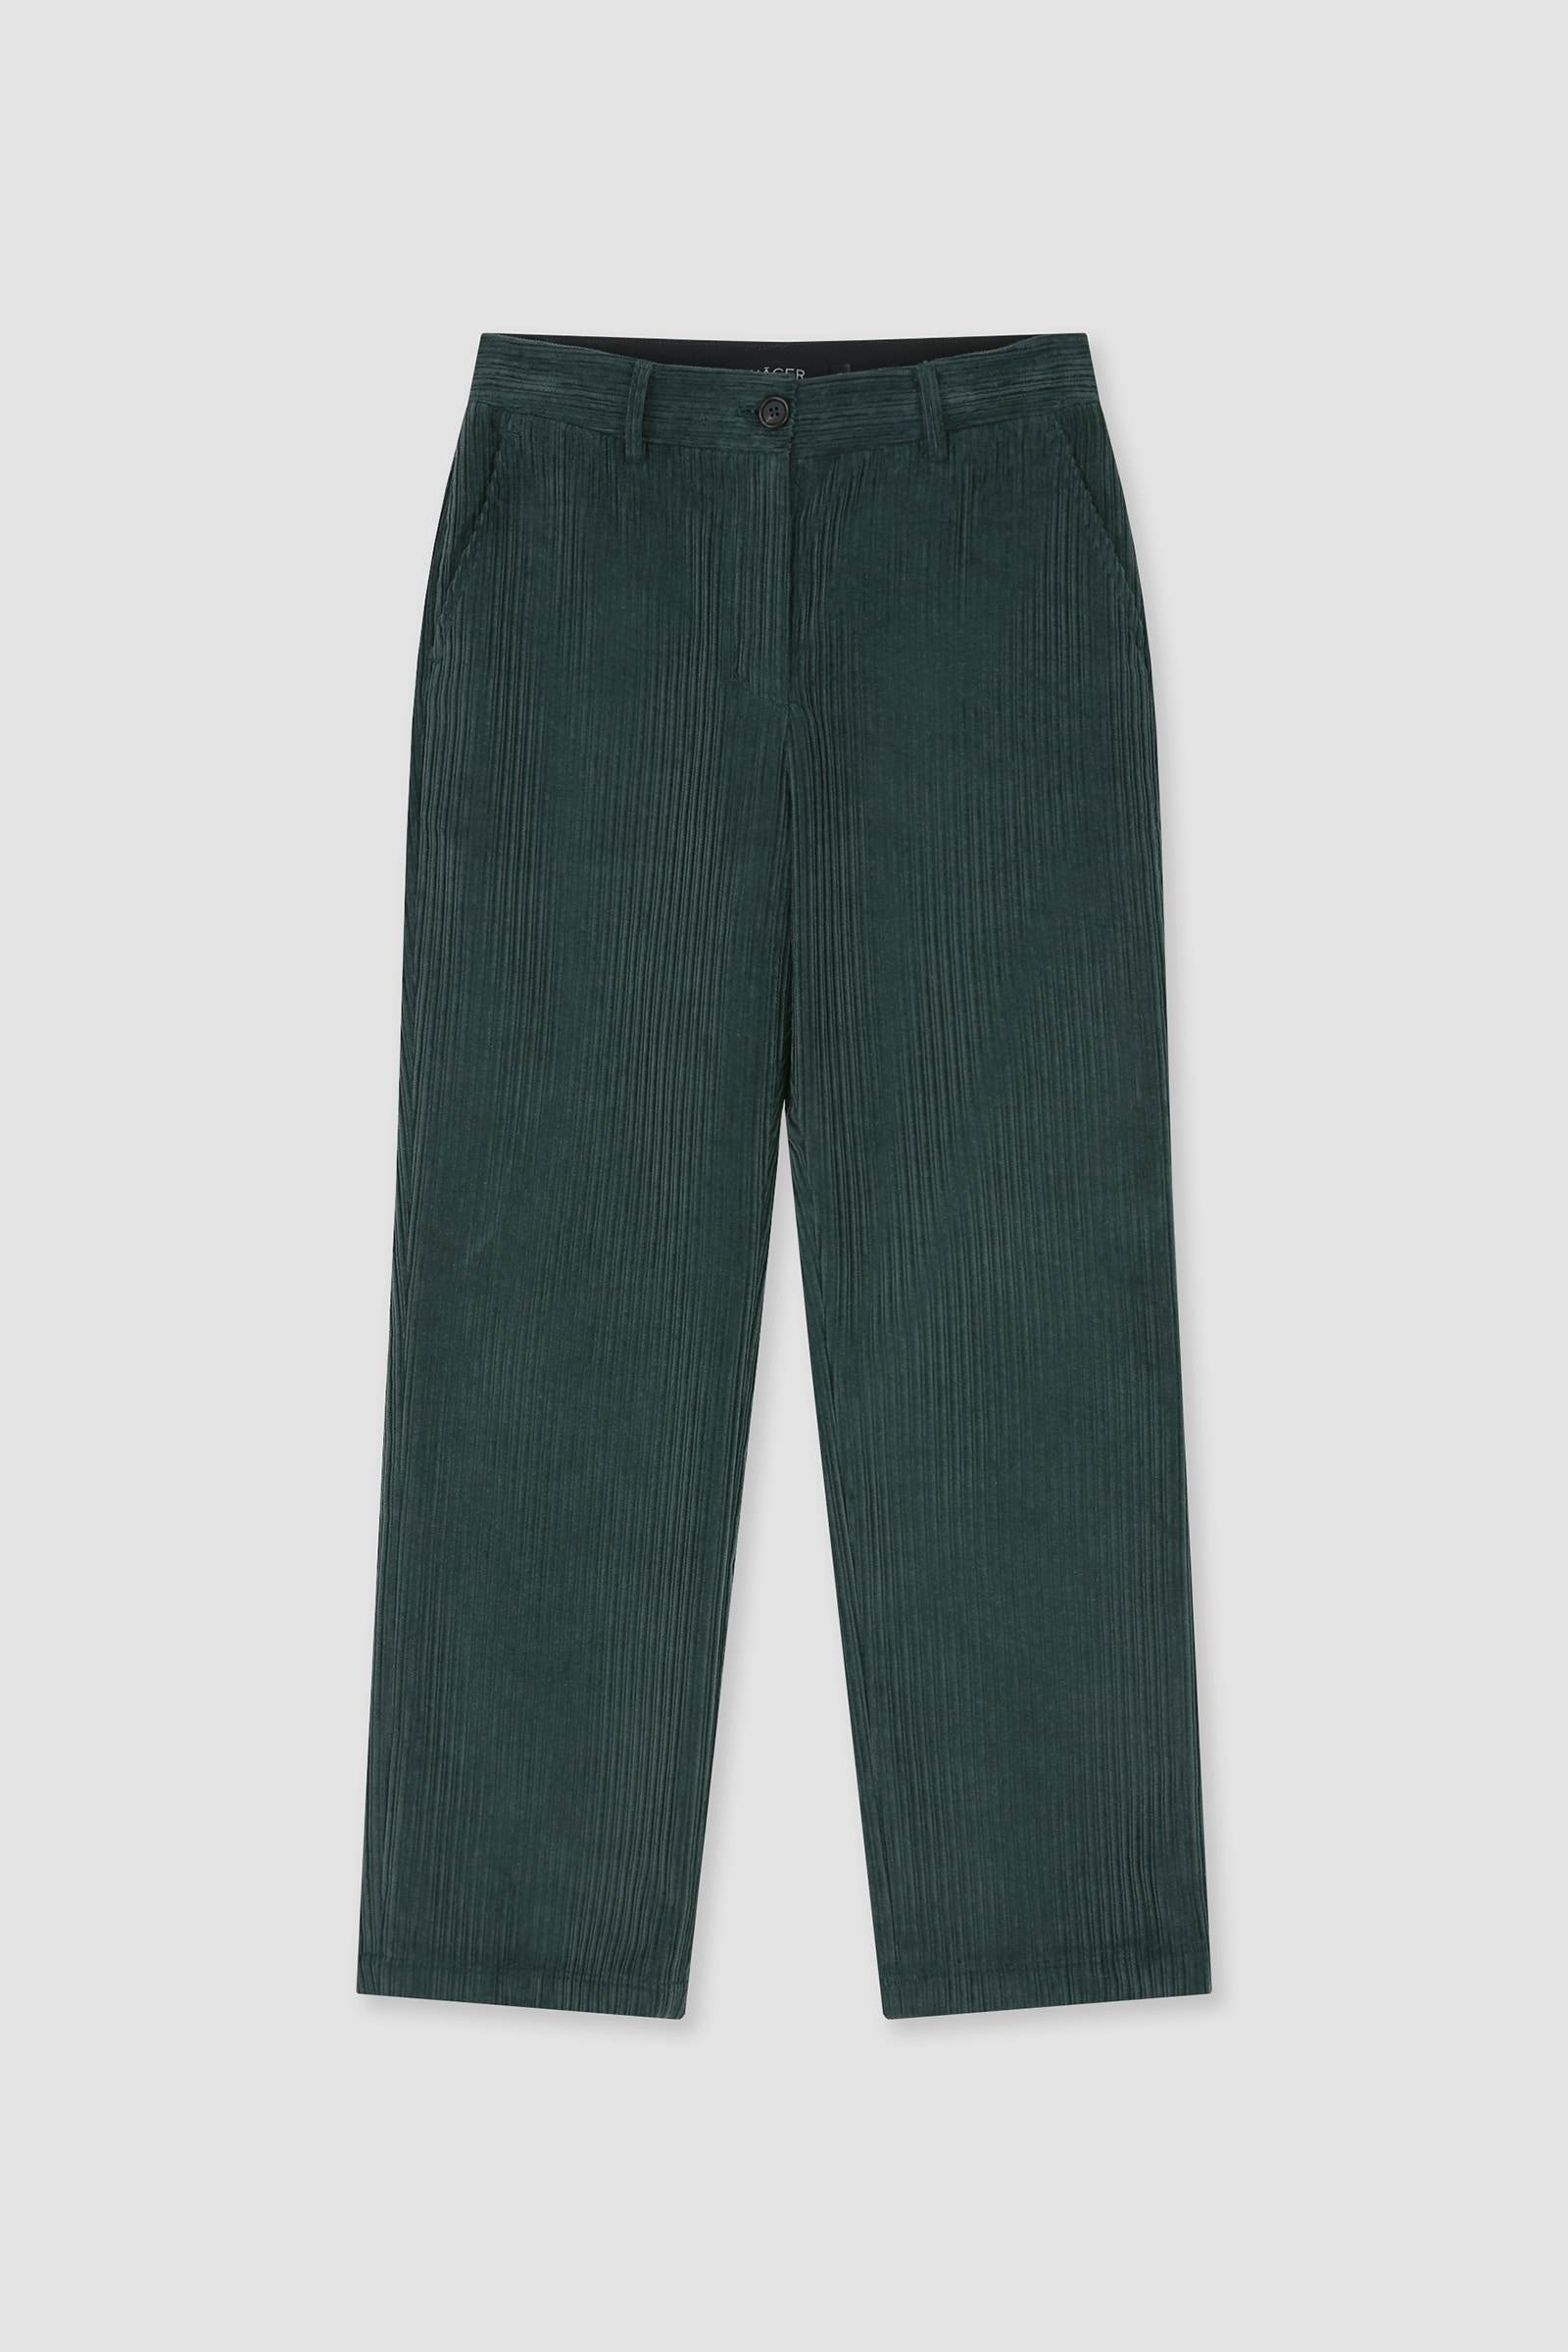 [2nd] Corduroy Pants